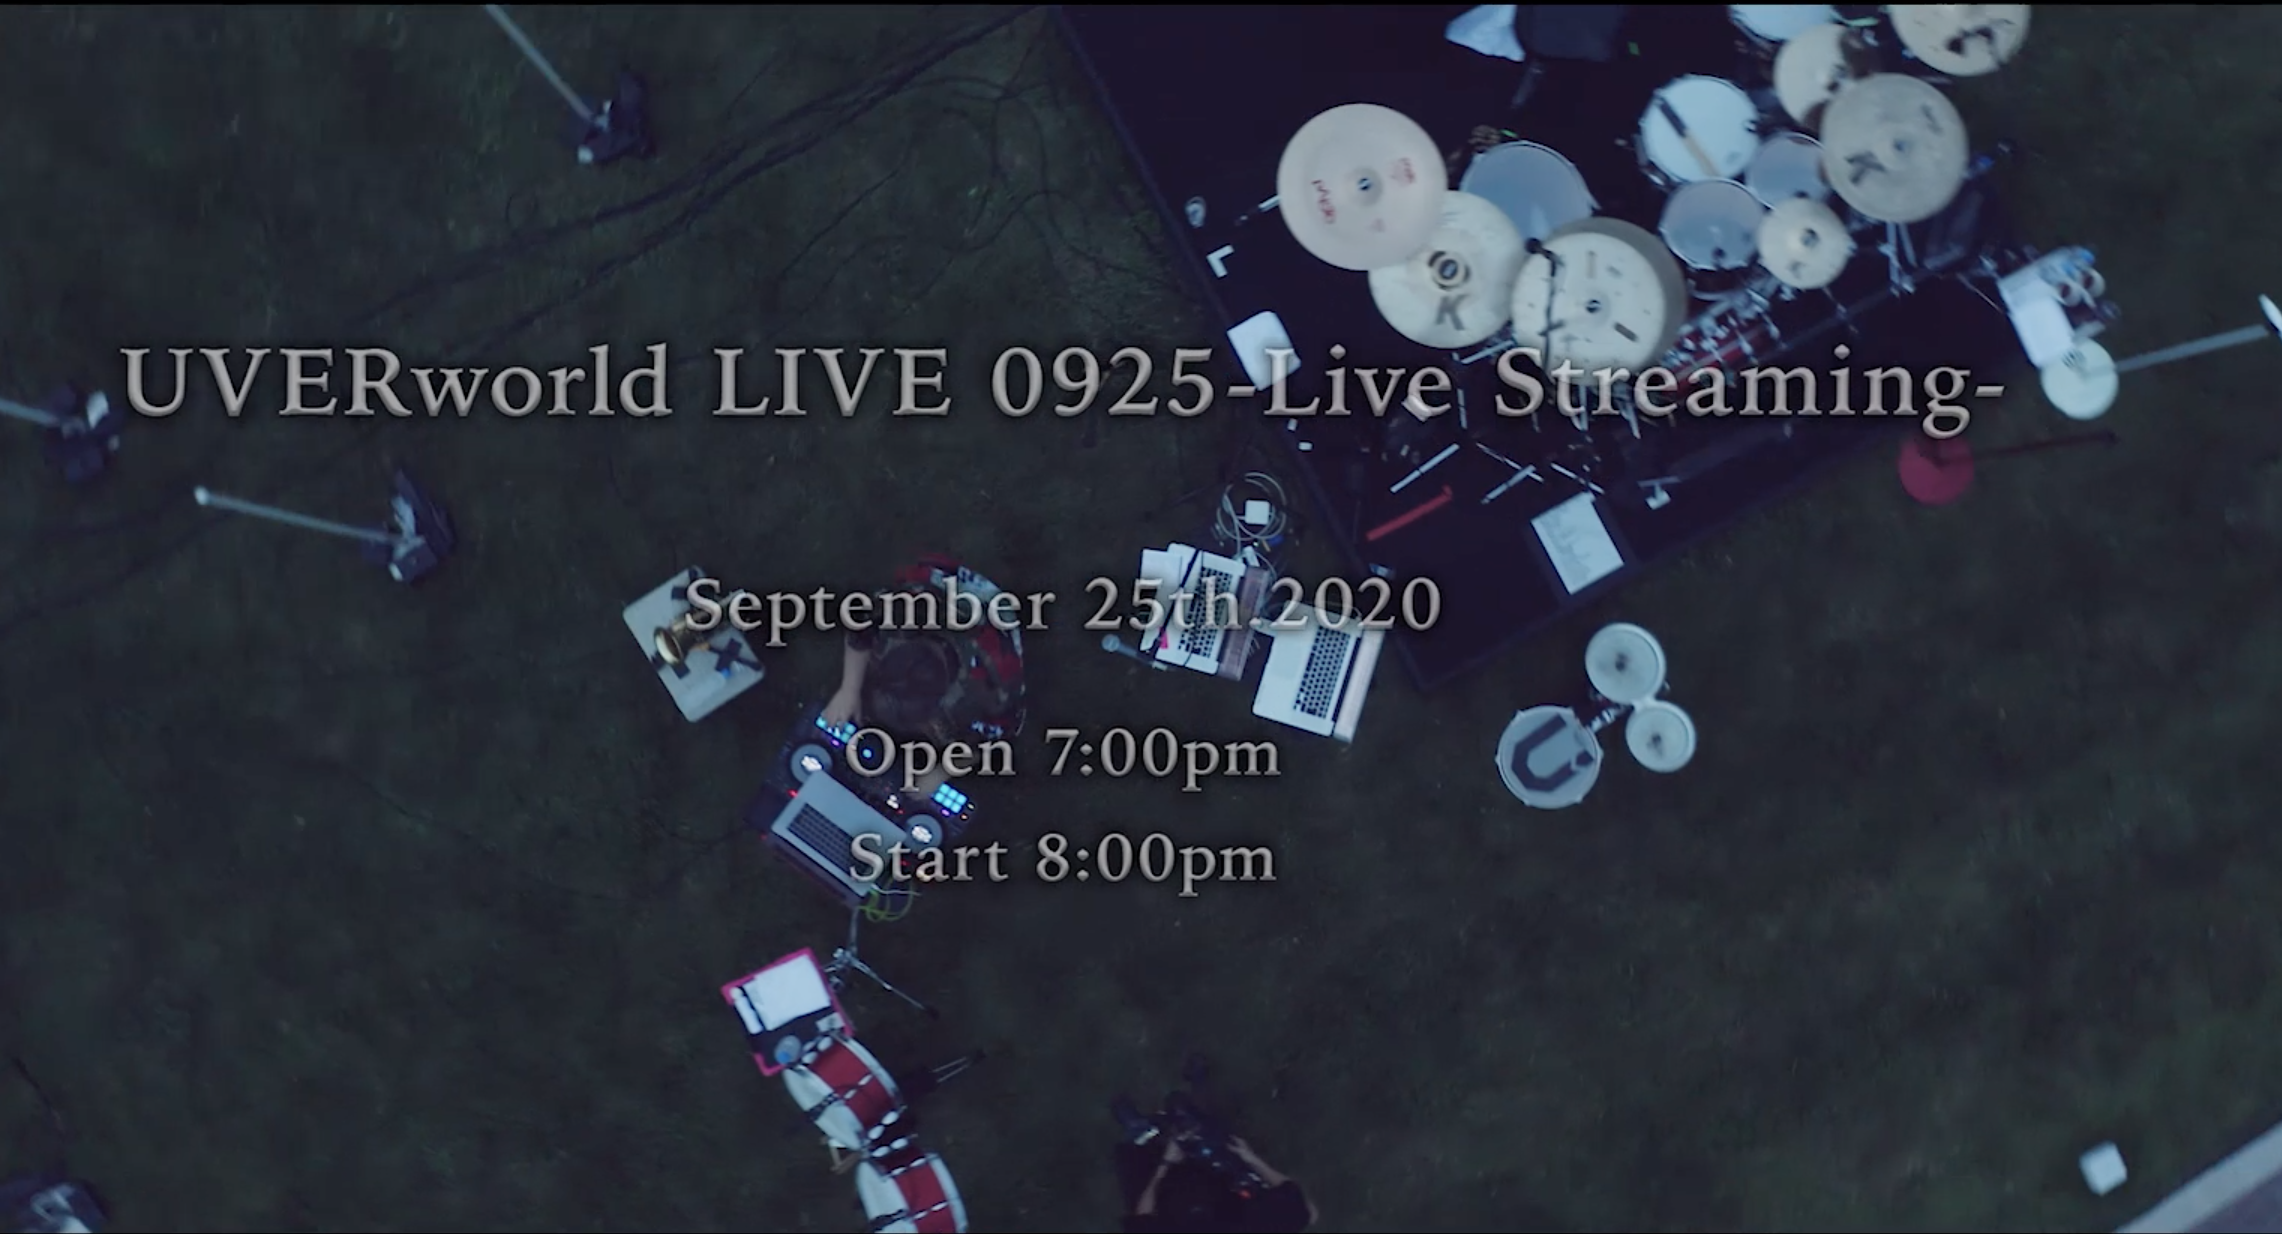 【ご案内】UVERworld LIVE 0925-Live Streaming- に関して